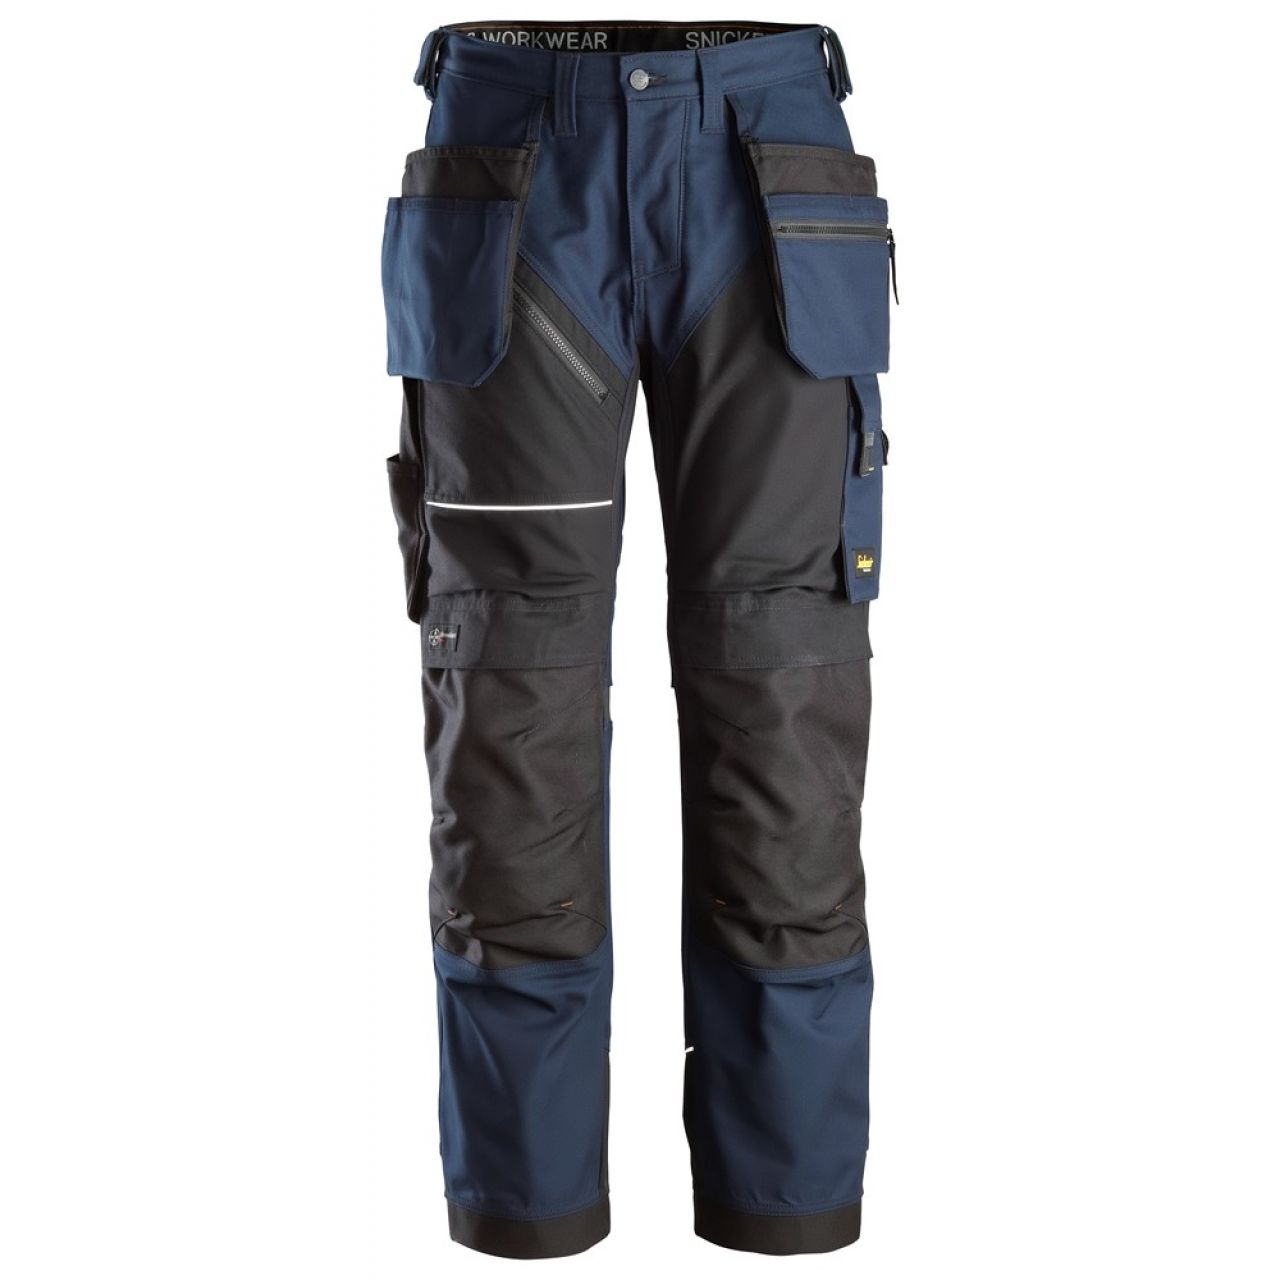 6214 Pantalones largos de trabajo con bolsillos flotantes Canvas+ RuffWork azul marino-negro talla 258